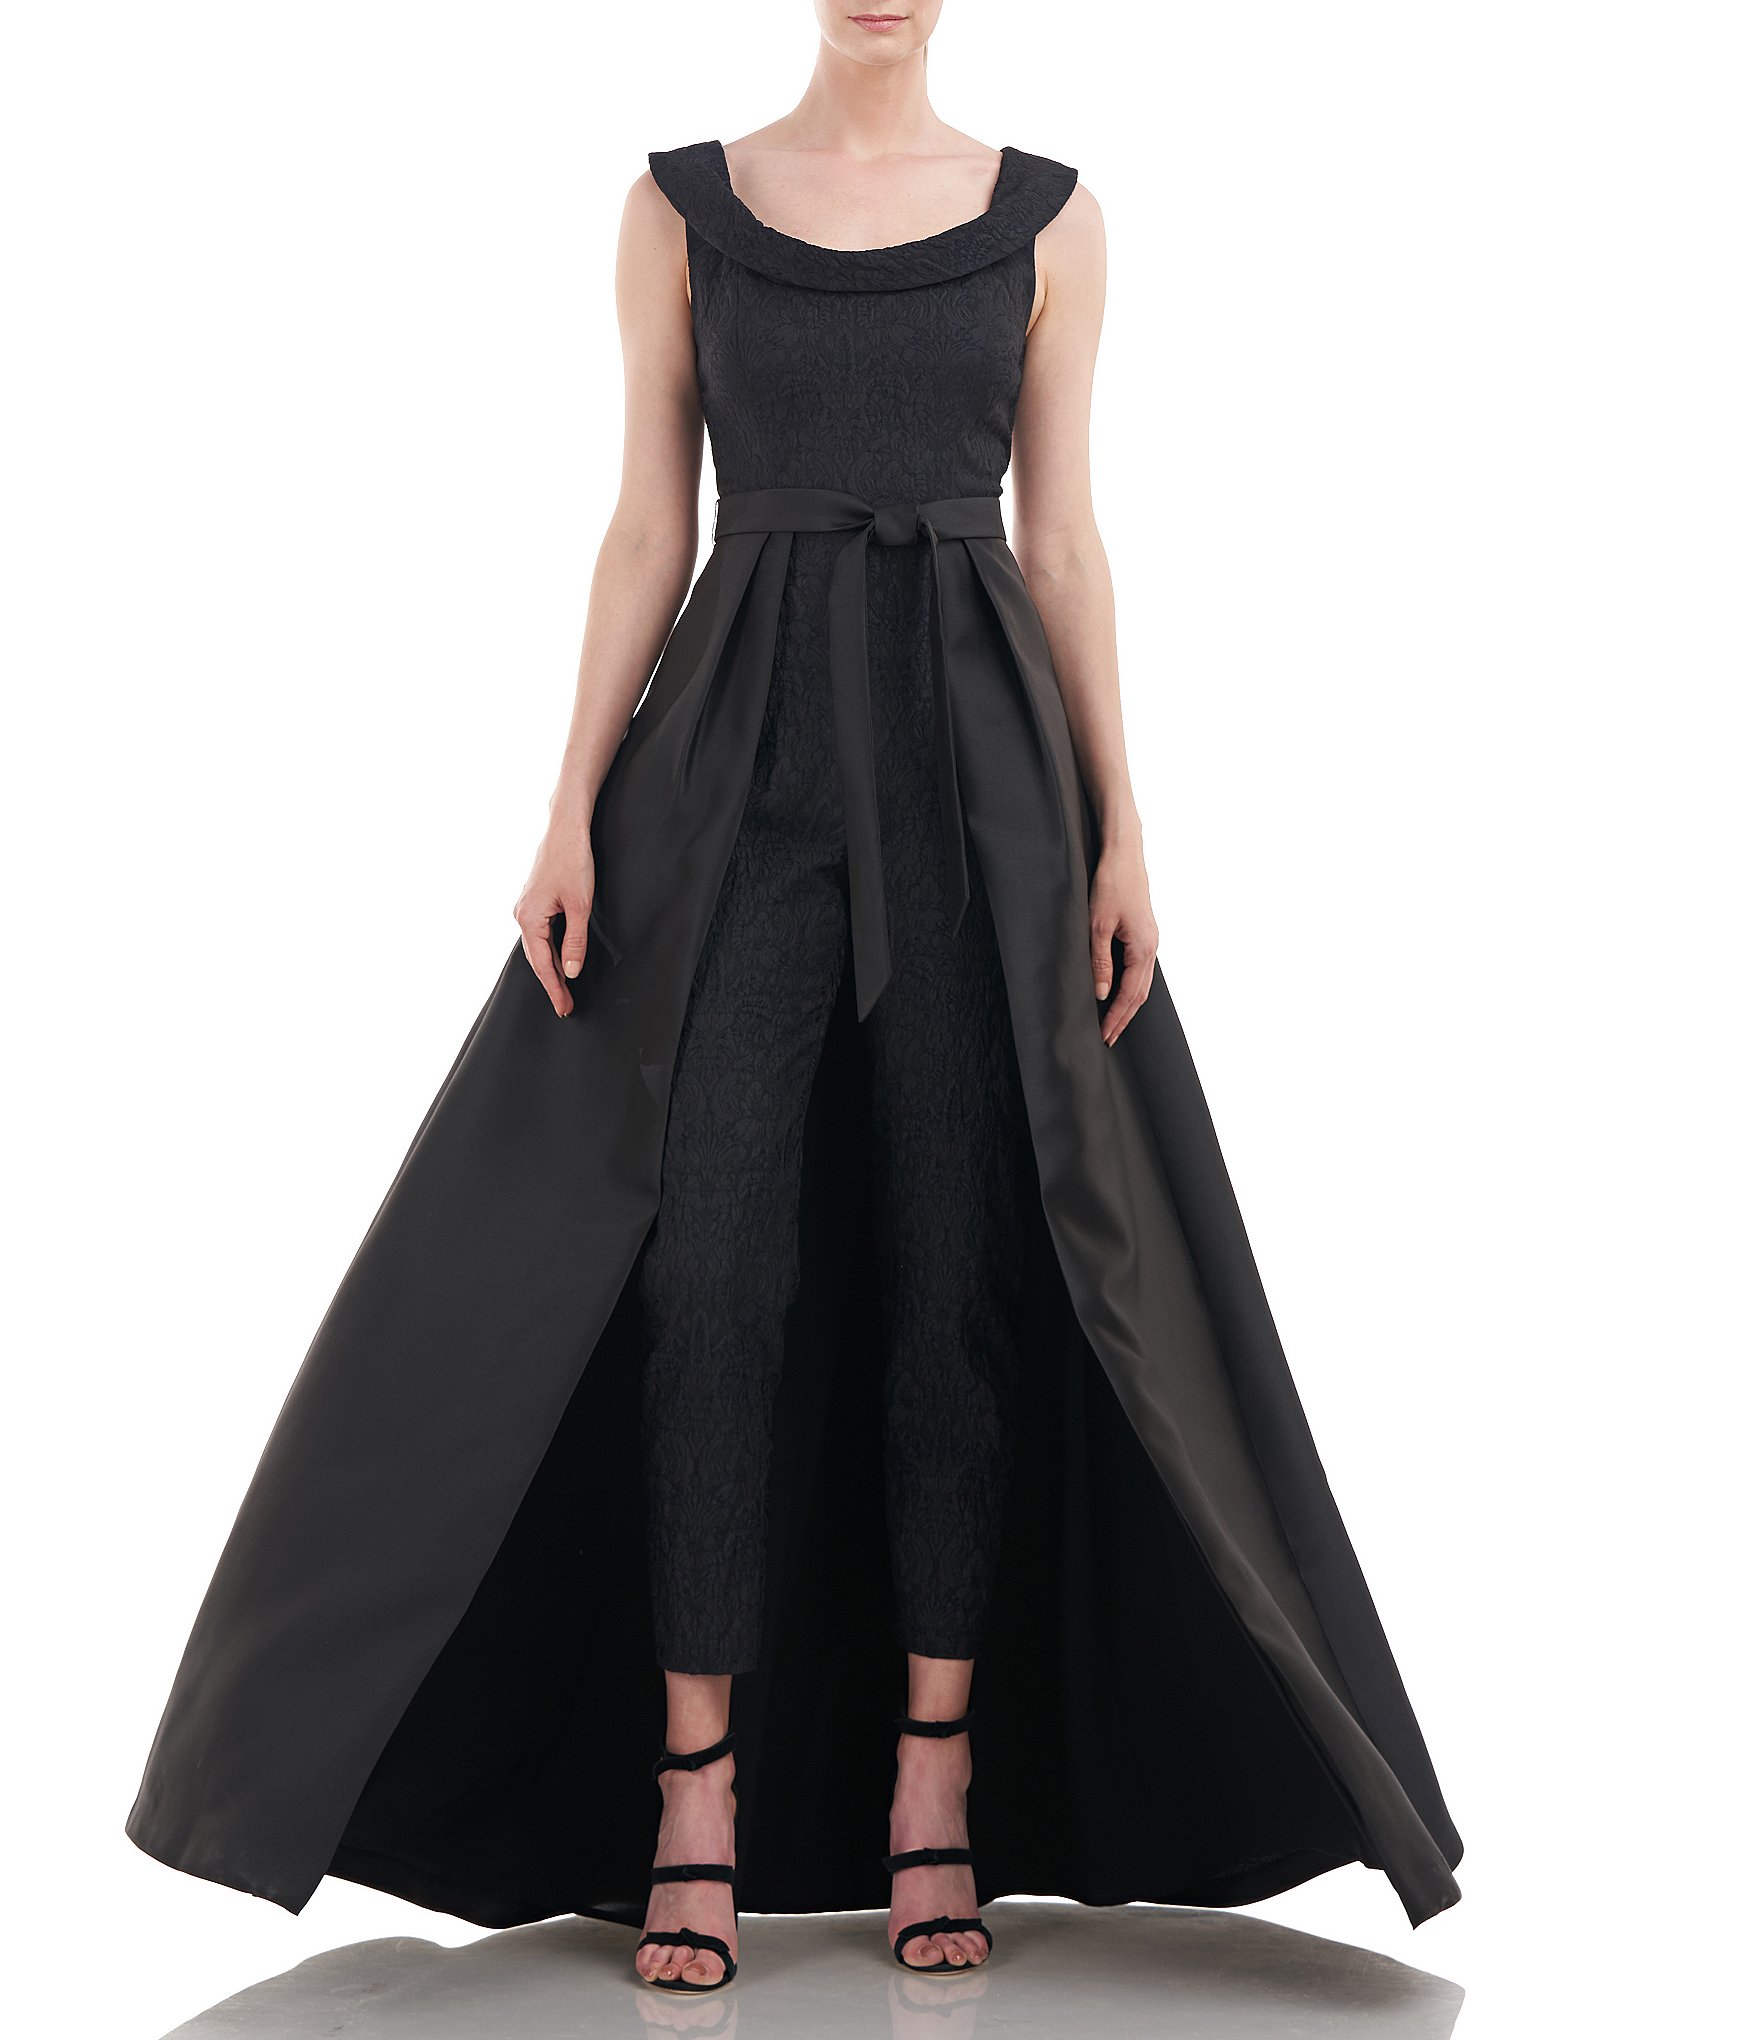 Black Long Romper Outfit Best Sale - www.bridgepartnersllc.com 1692424305